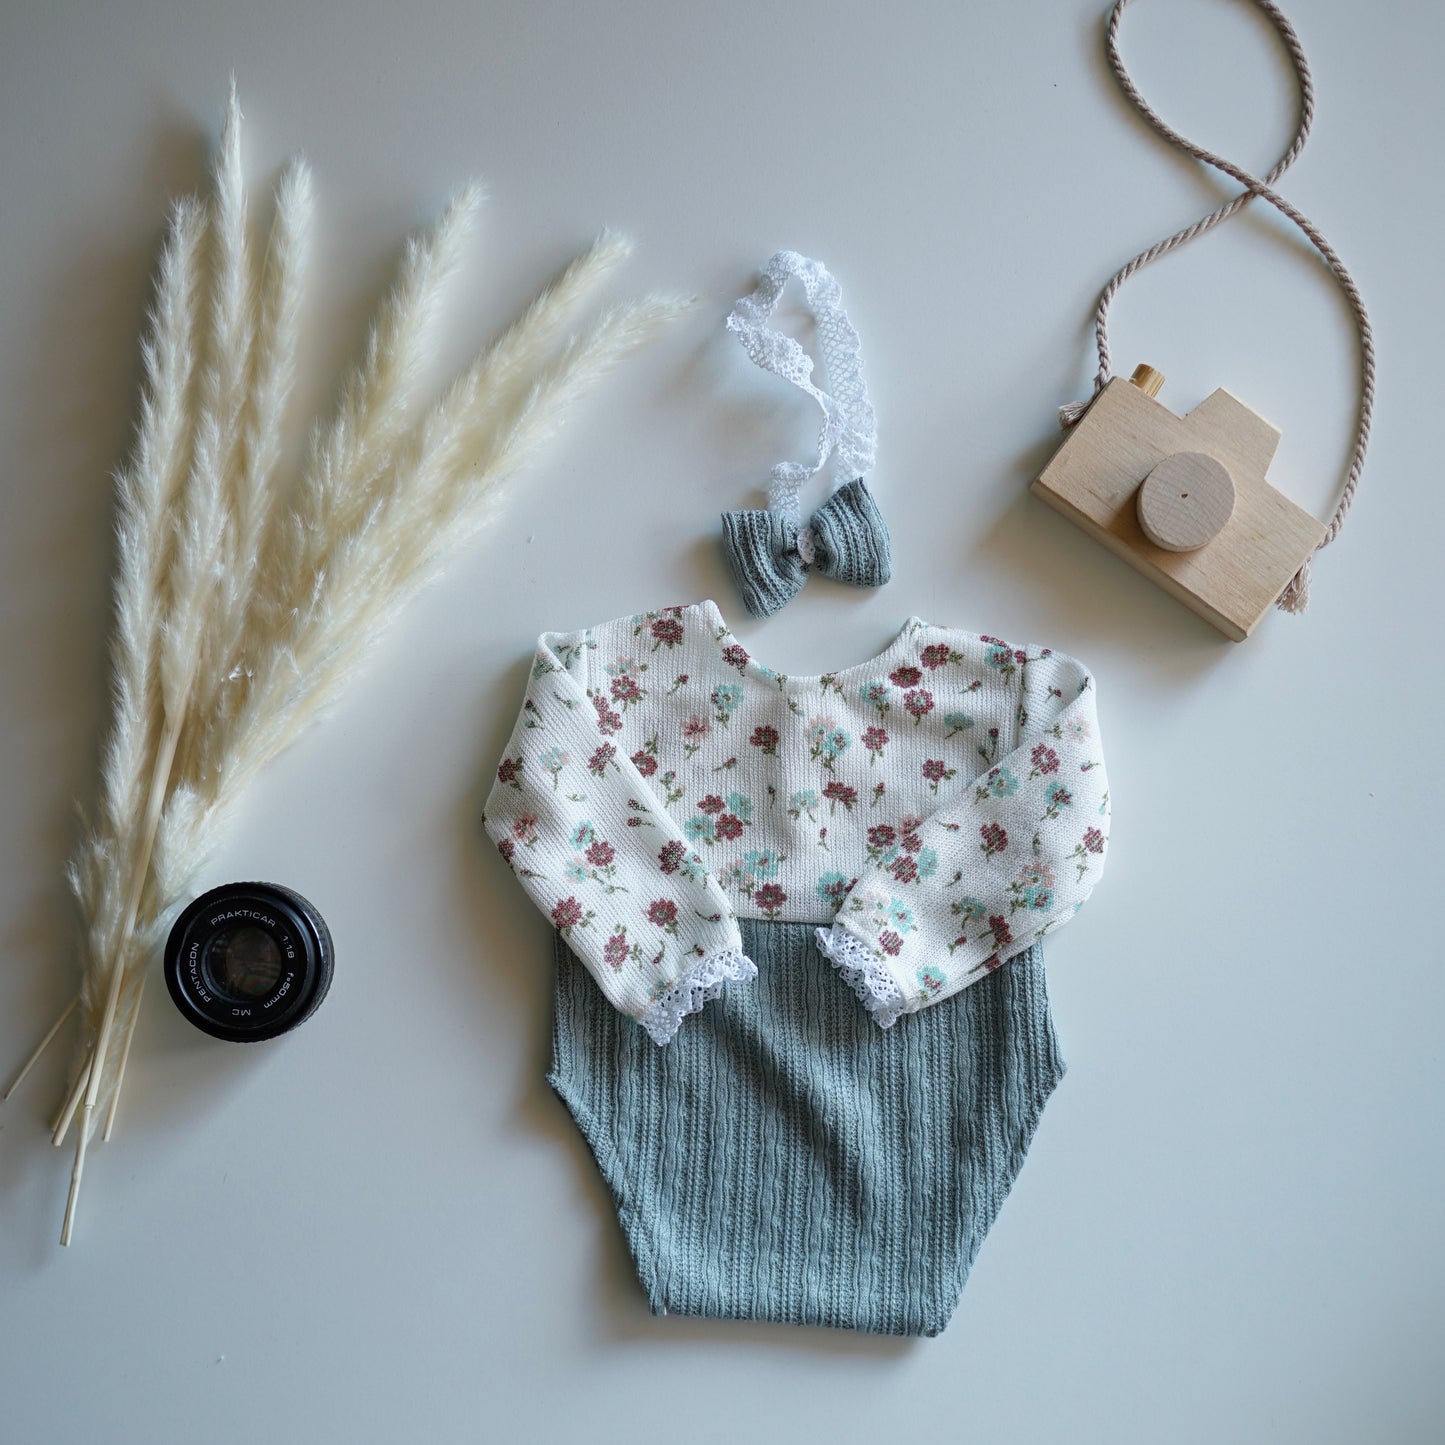 Anabelle Blumen-Mint-Neugeborenen-Fotografie-Requisiten-Outfit für Mädchen